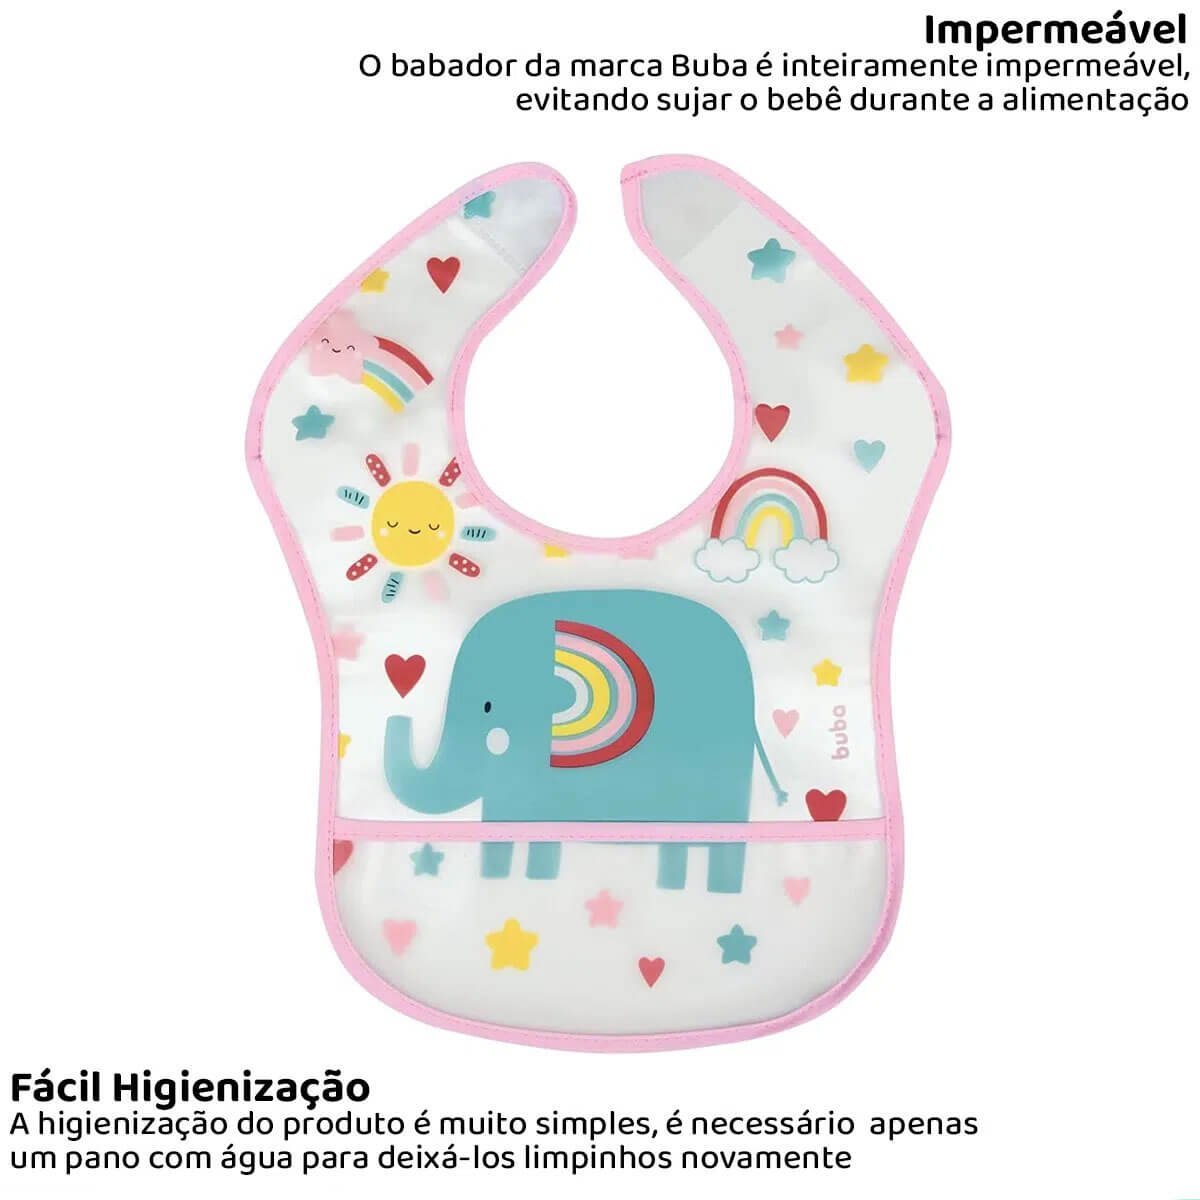 Babador Infantil Impermeável com Coletor Cata Migalhas Arco Íris Bebê Buba Rosa - 5